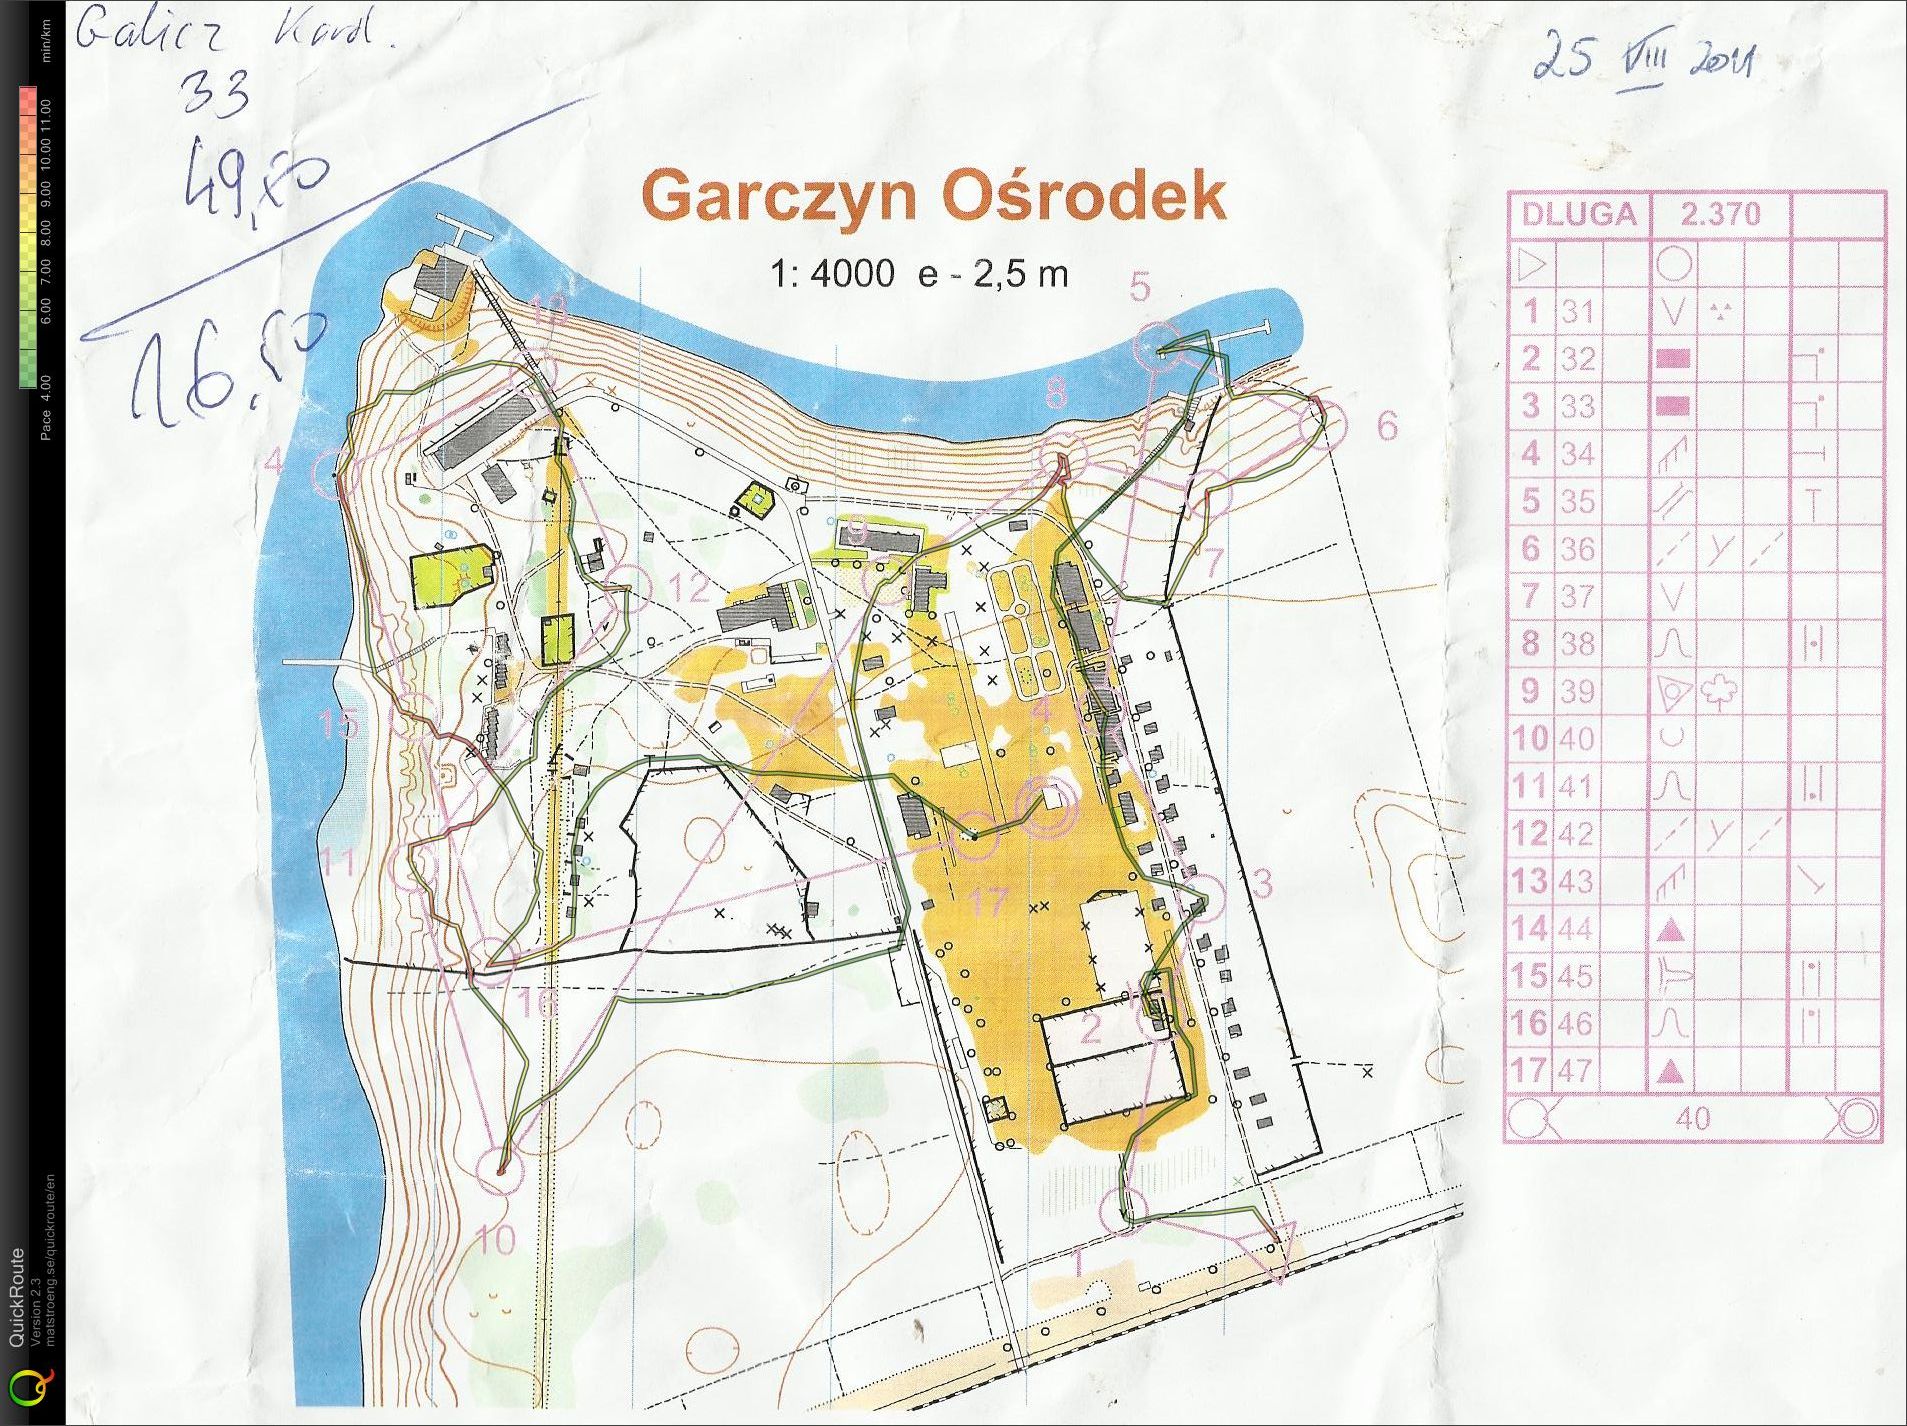 Trening - obóz Garczyn (25-08-2011)